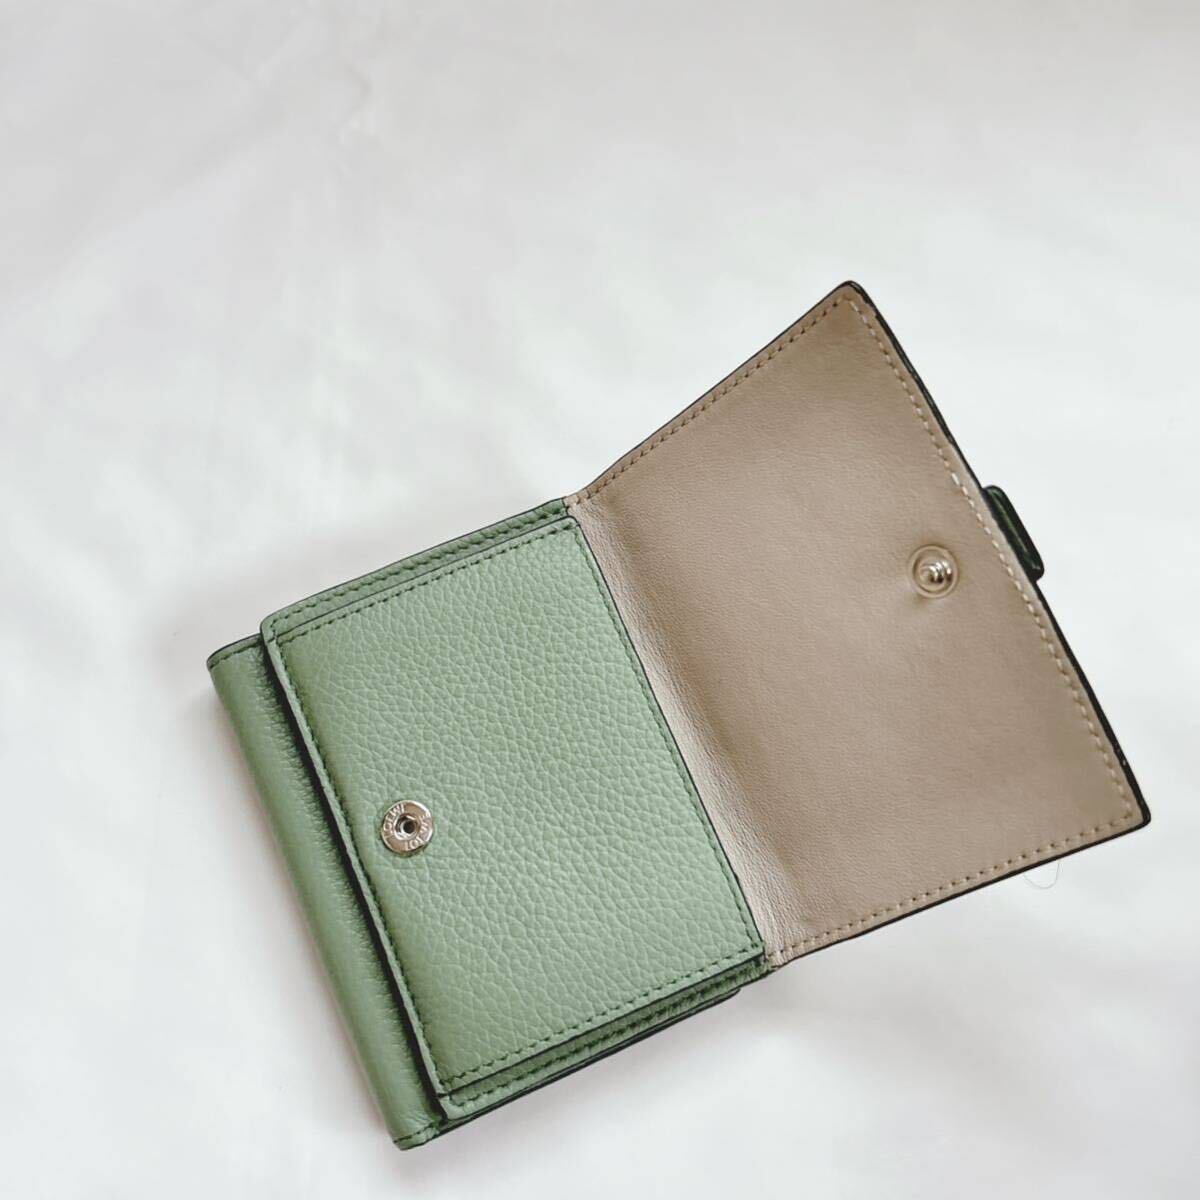 1 иен прекрасный товар LOEWE Loewe три складывать кошелек бумажник кошелек кожа машина f кожа compact Mini зеленый × Brown сумка для хранения имеется 